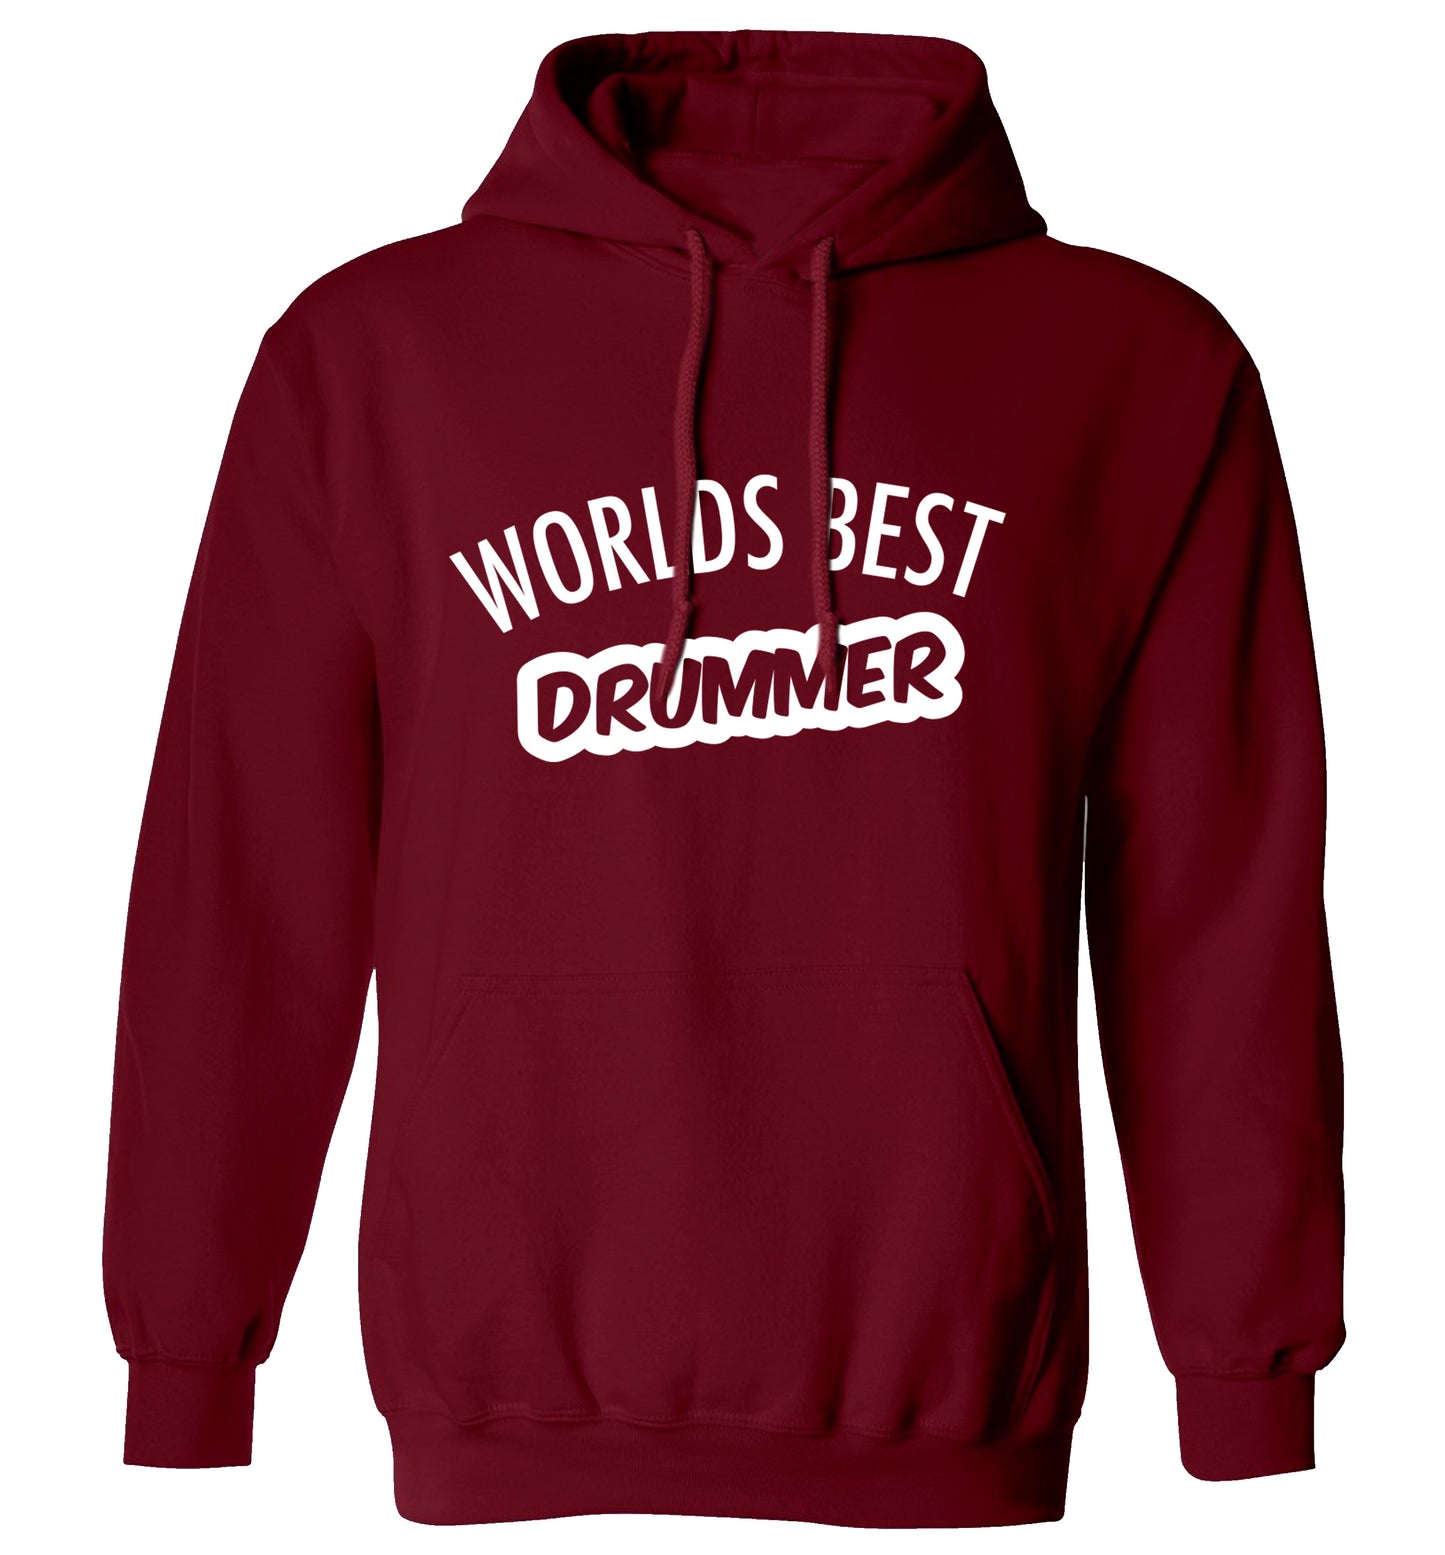 Worlds best drummer adults unisex maroon hoodie 2XL